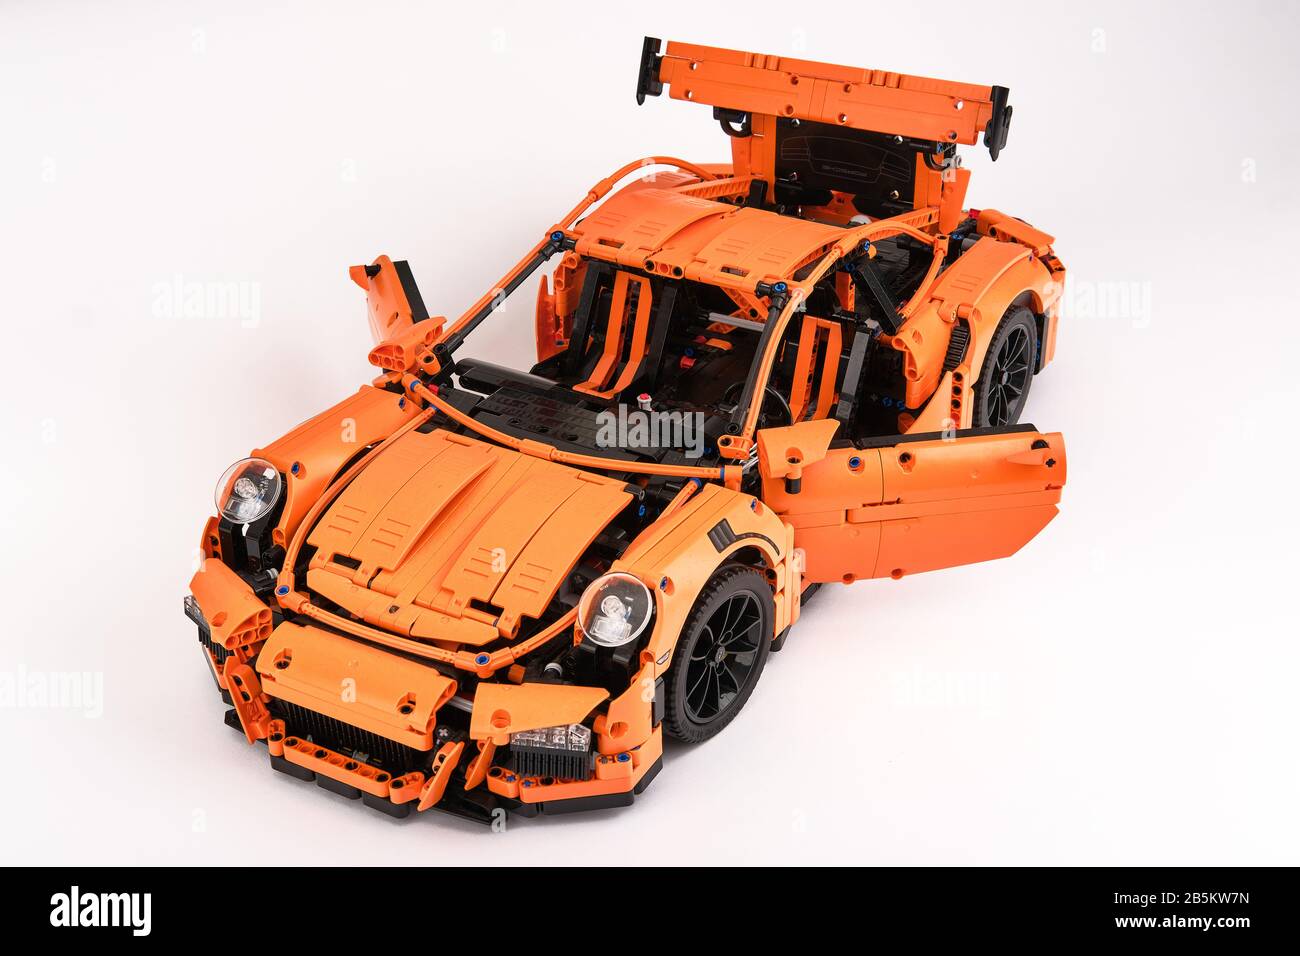 Différentes vues de la voiture LEGO Porsche GT 3 RS orange assemblée Banque D'Images